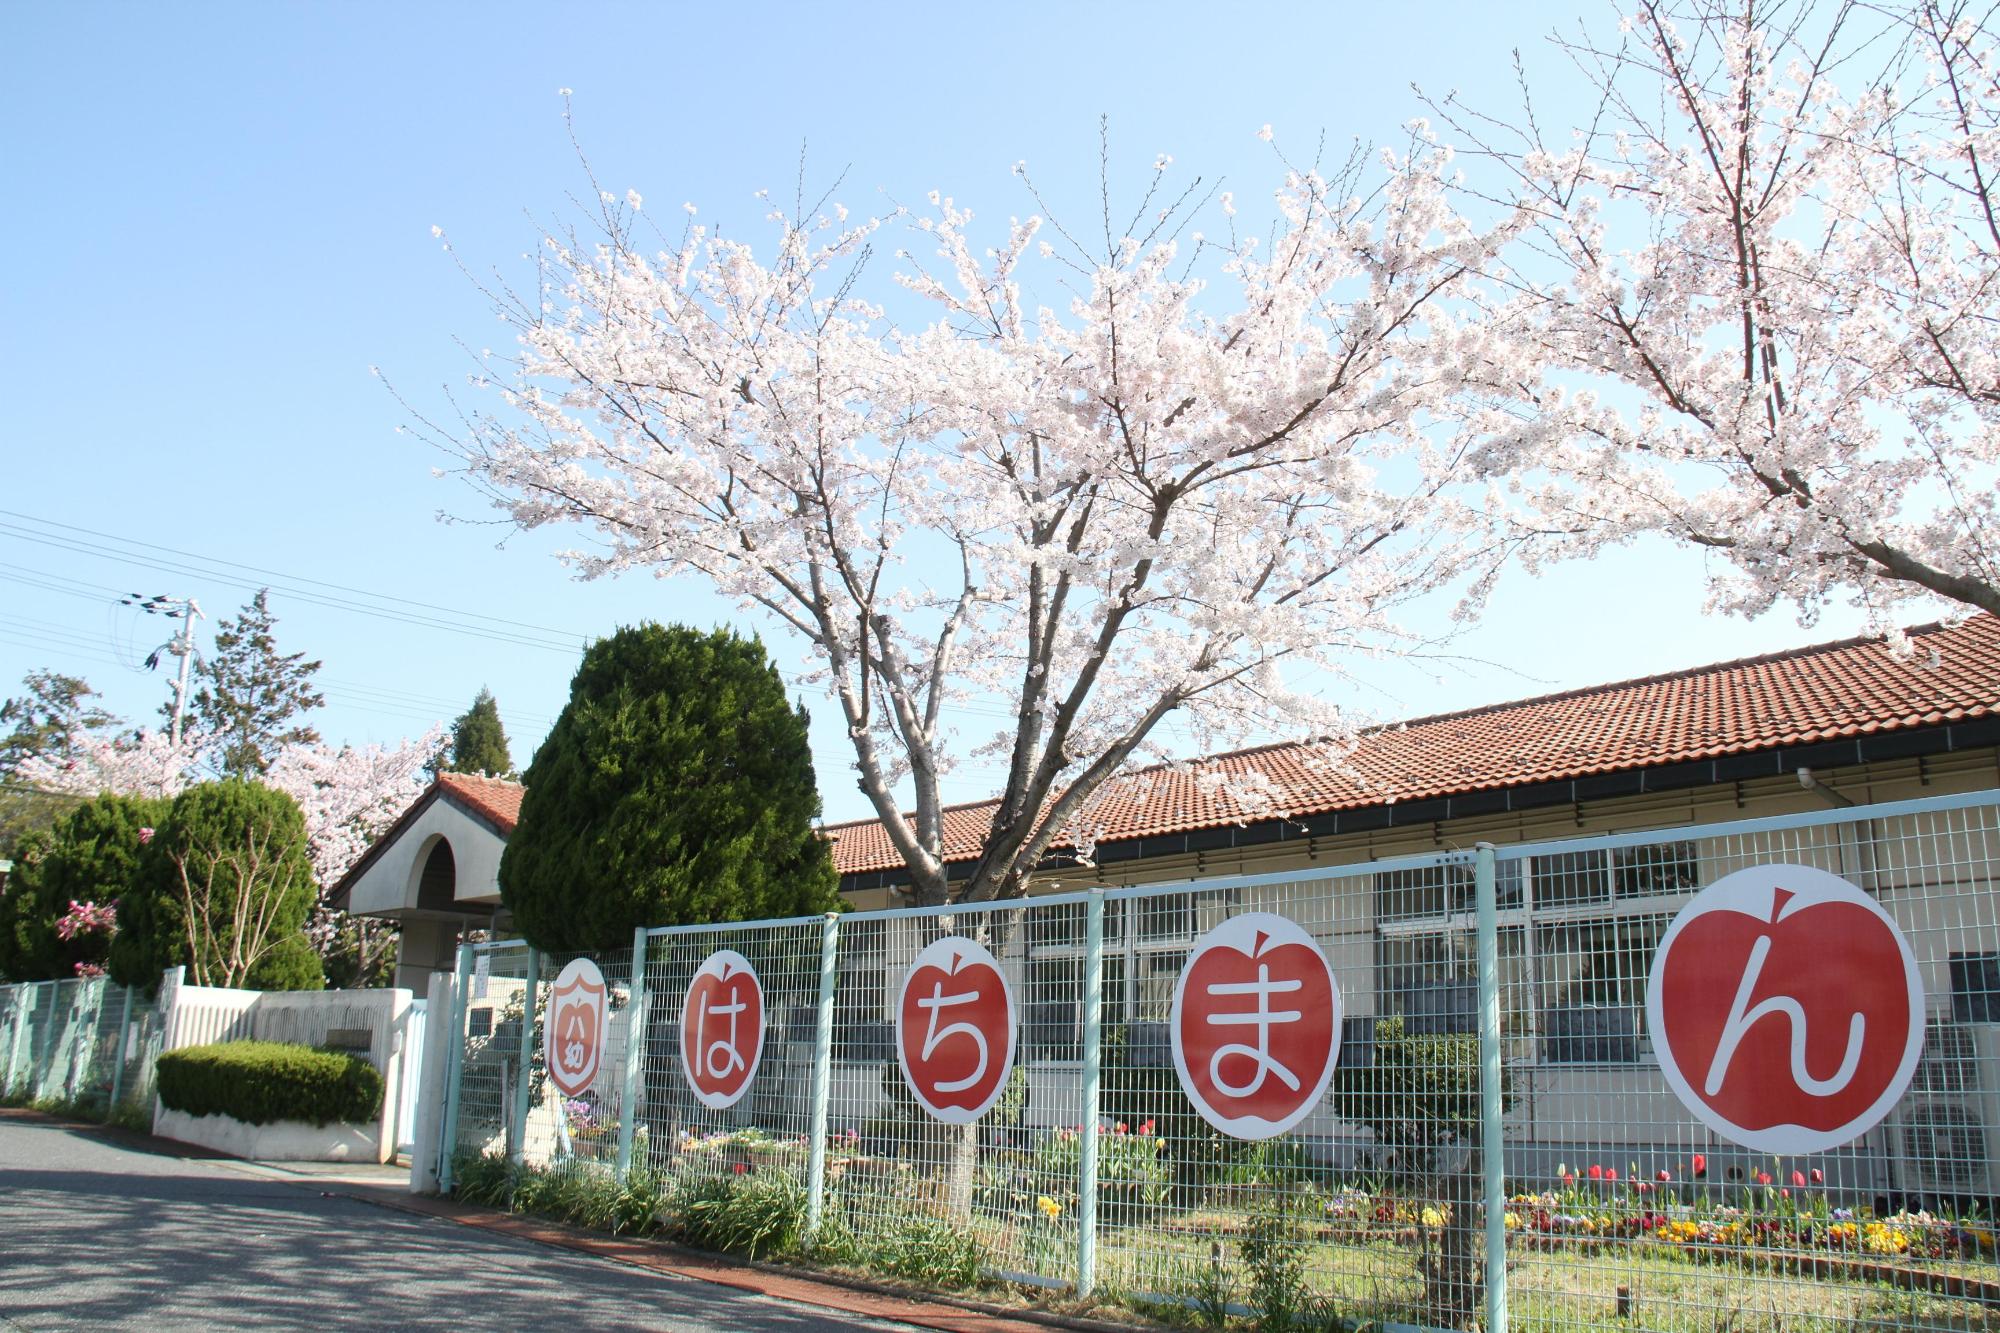 ひらがな1文字づつはちまんと書かれたリンゴのイラストが描かれた紙が貼ってあるフェンスの奥に、満開の桜の木と八幡幼稚園園舎の写真